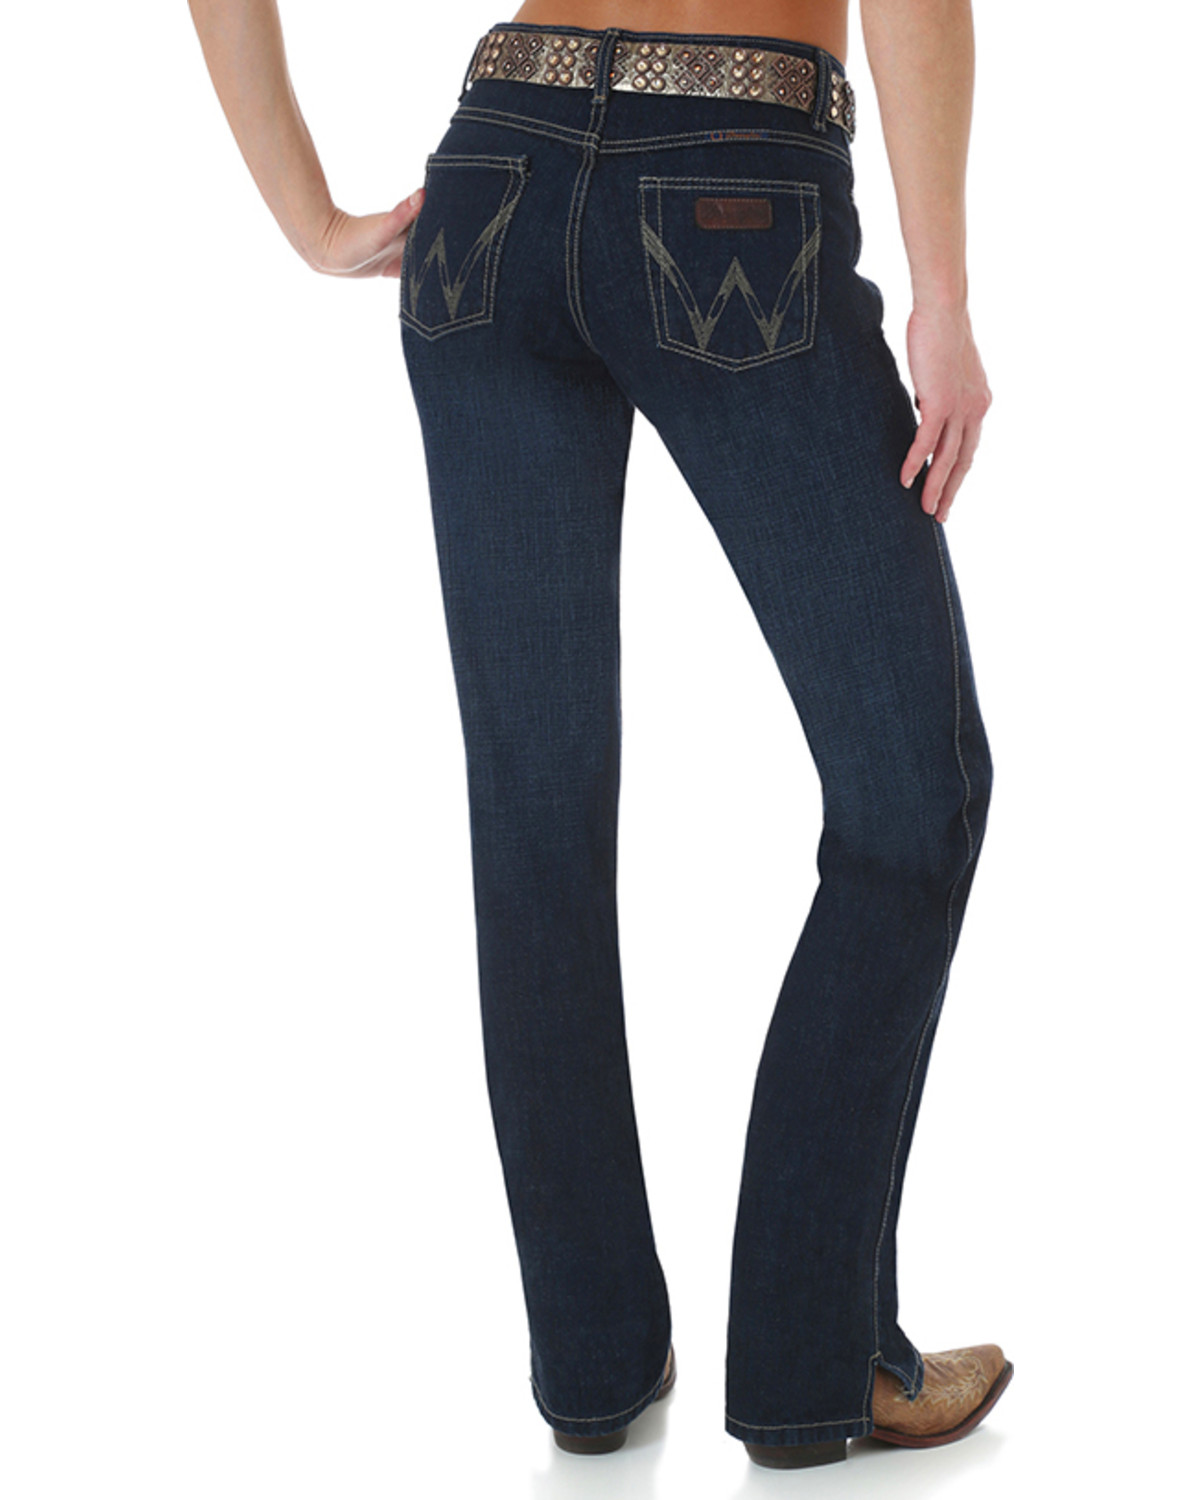 wrangler women's riding jeans